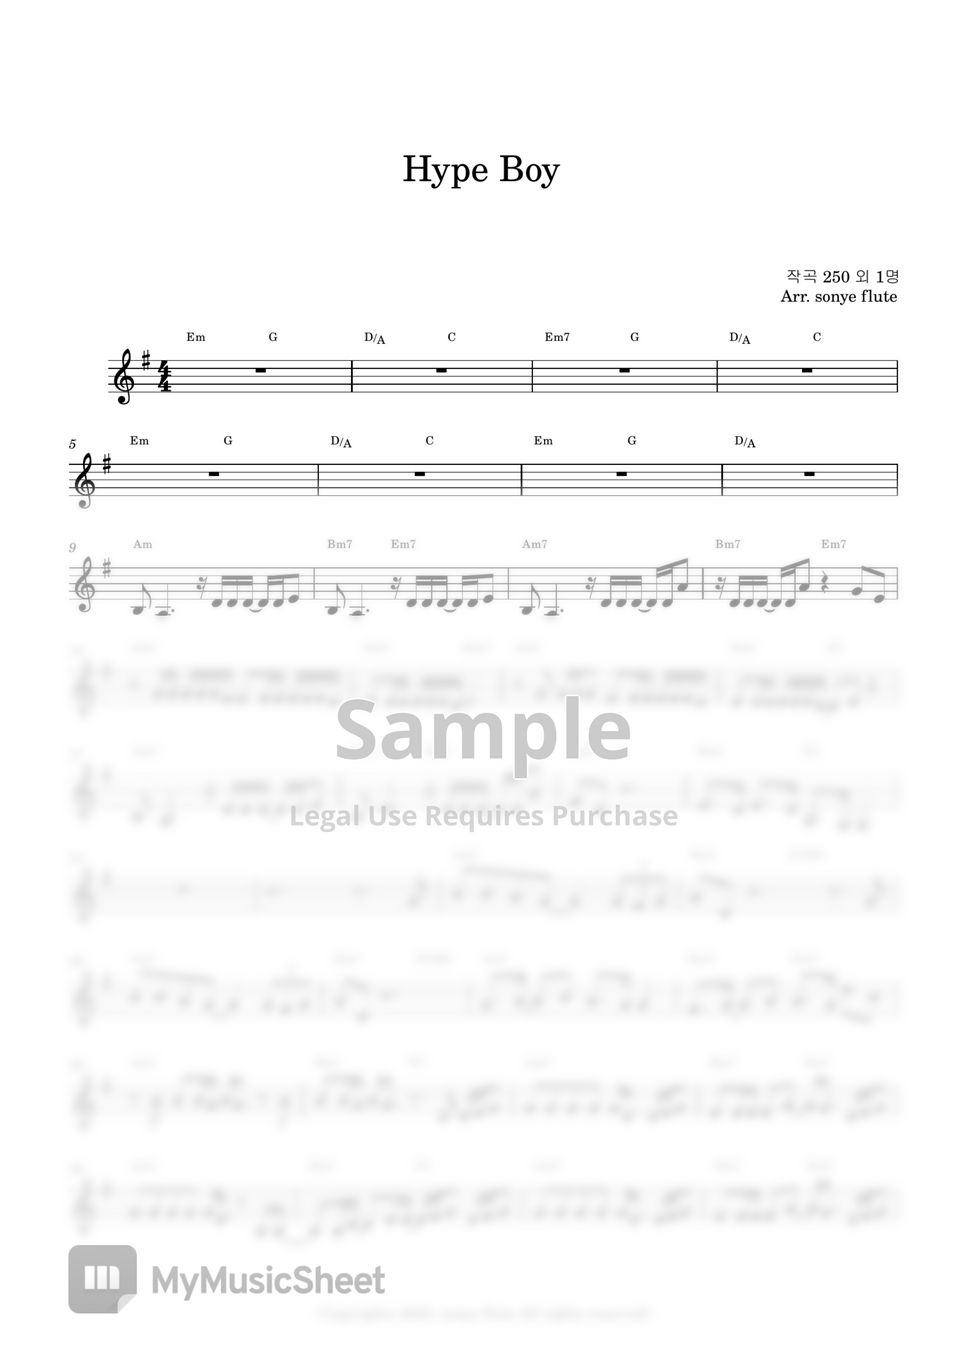 NewJeans - Hype Boy (Flute Sheet Music) by sonye flute